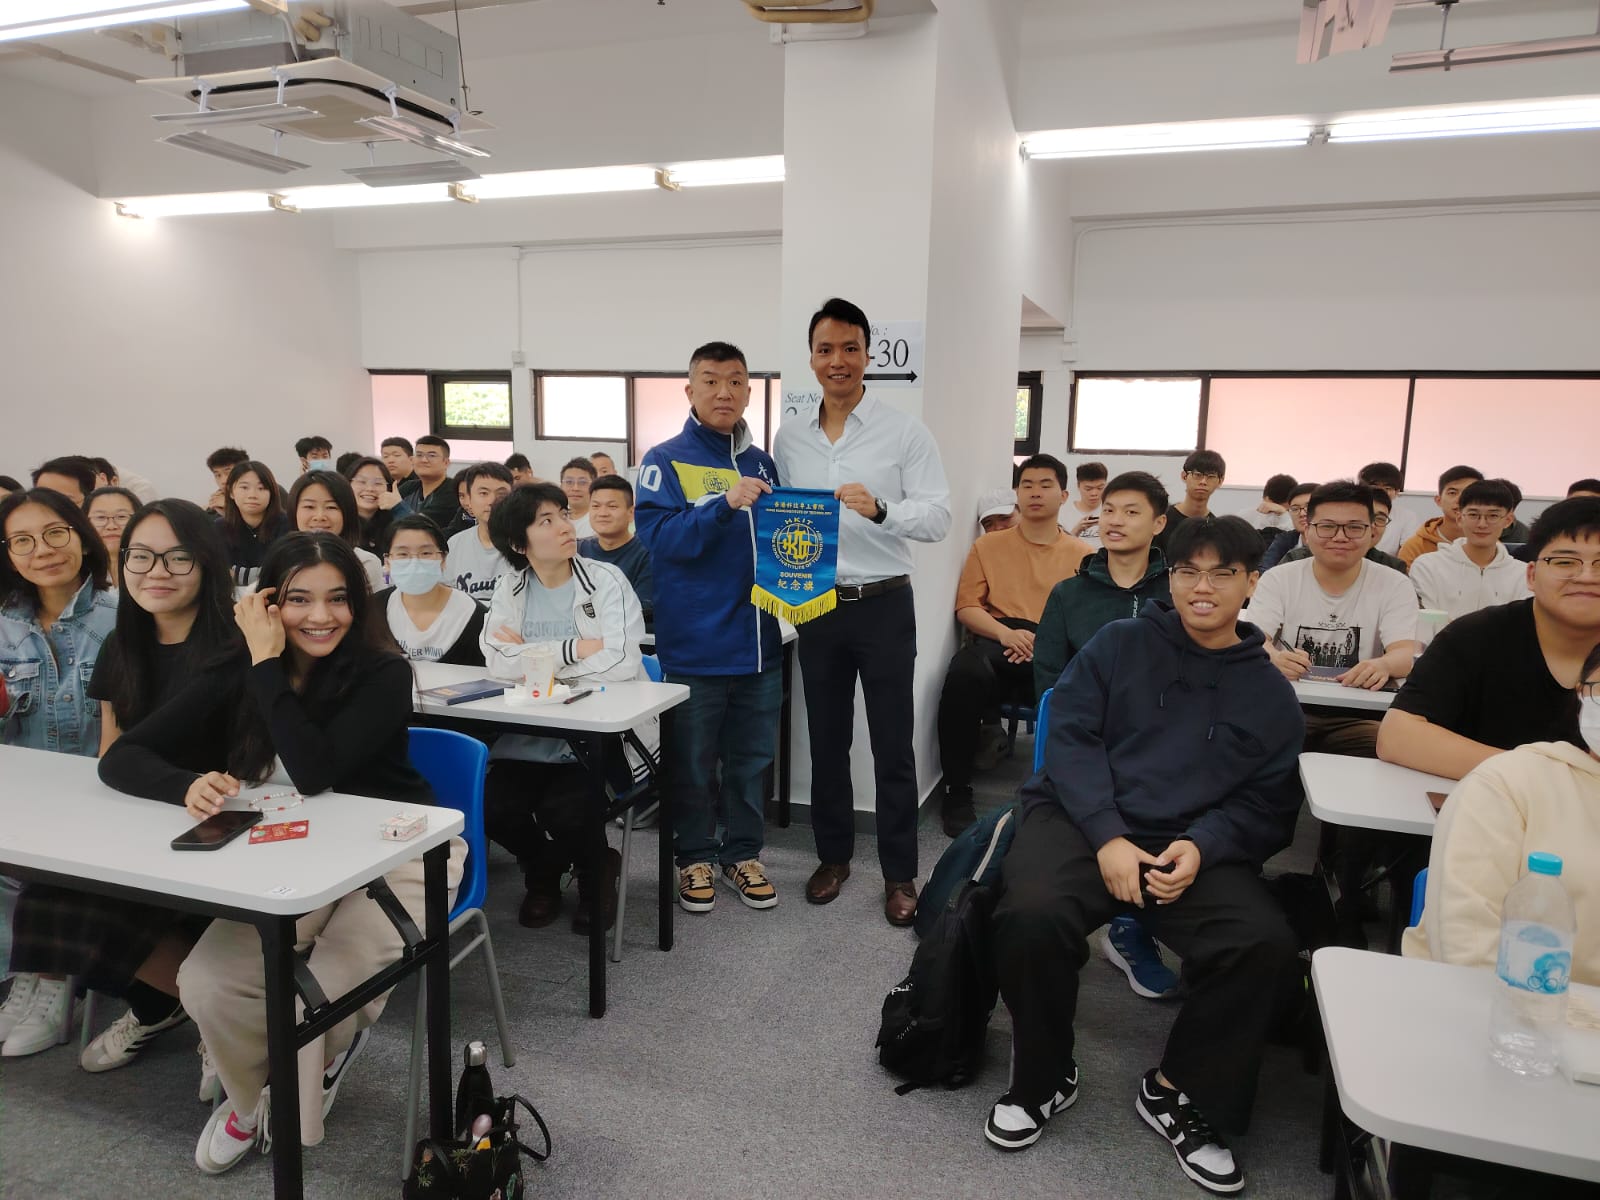 網絡安全及科技罪案調查科(網罪科)為『香港科技專上書院- 警隊實務課程』同學舉辦「科技罪案」講座